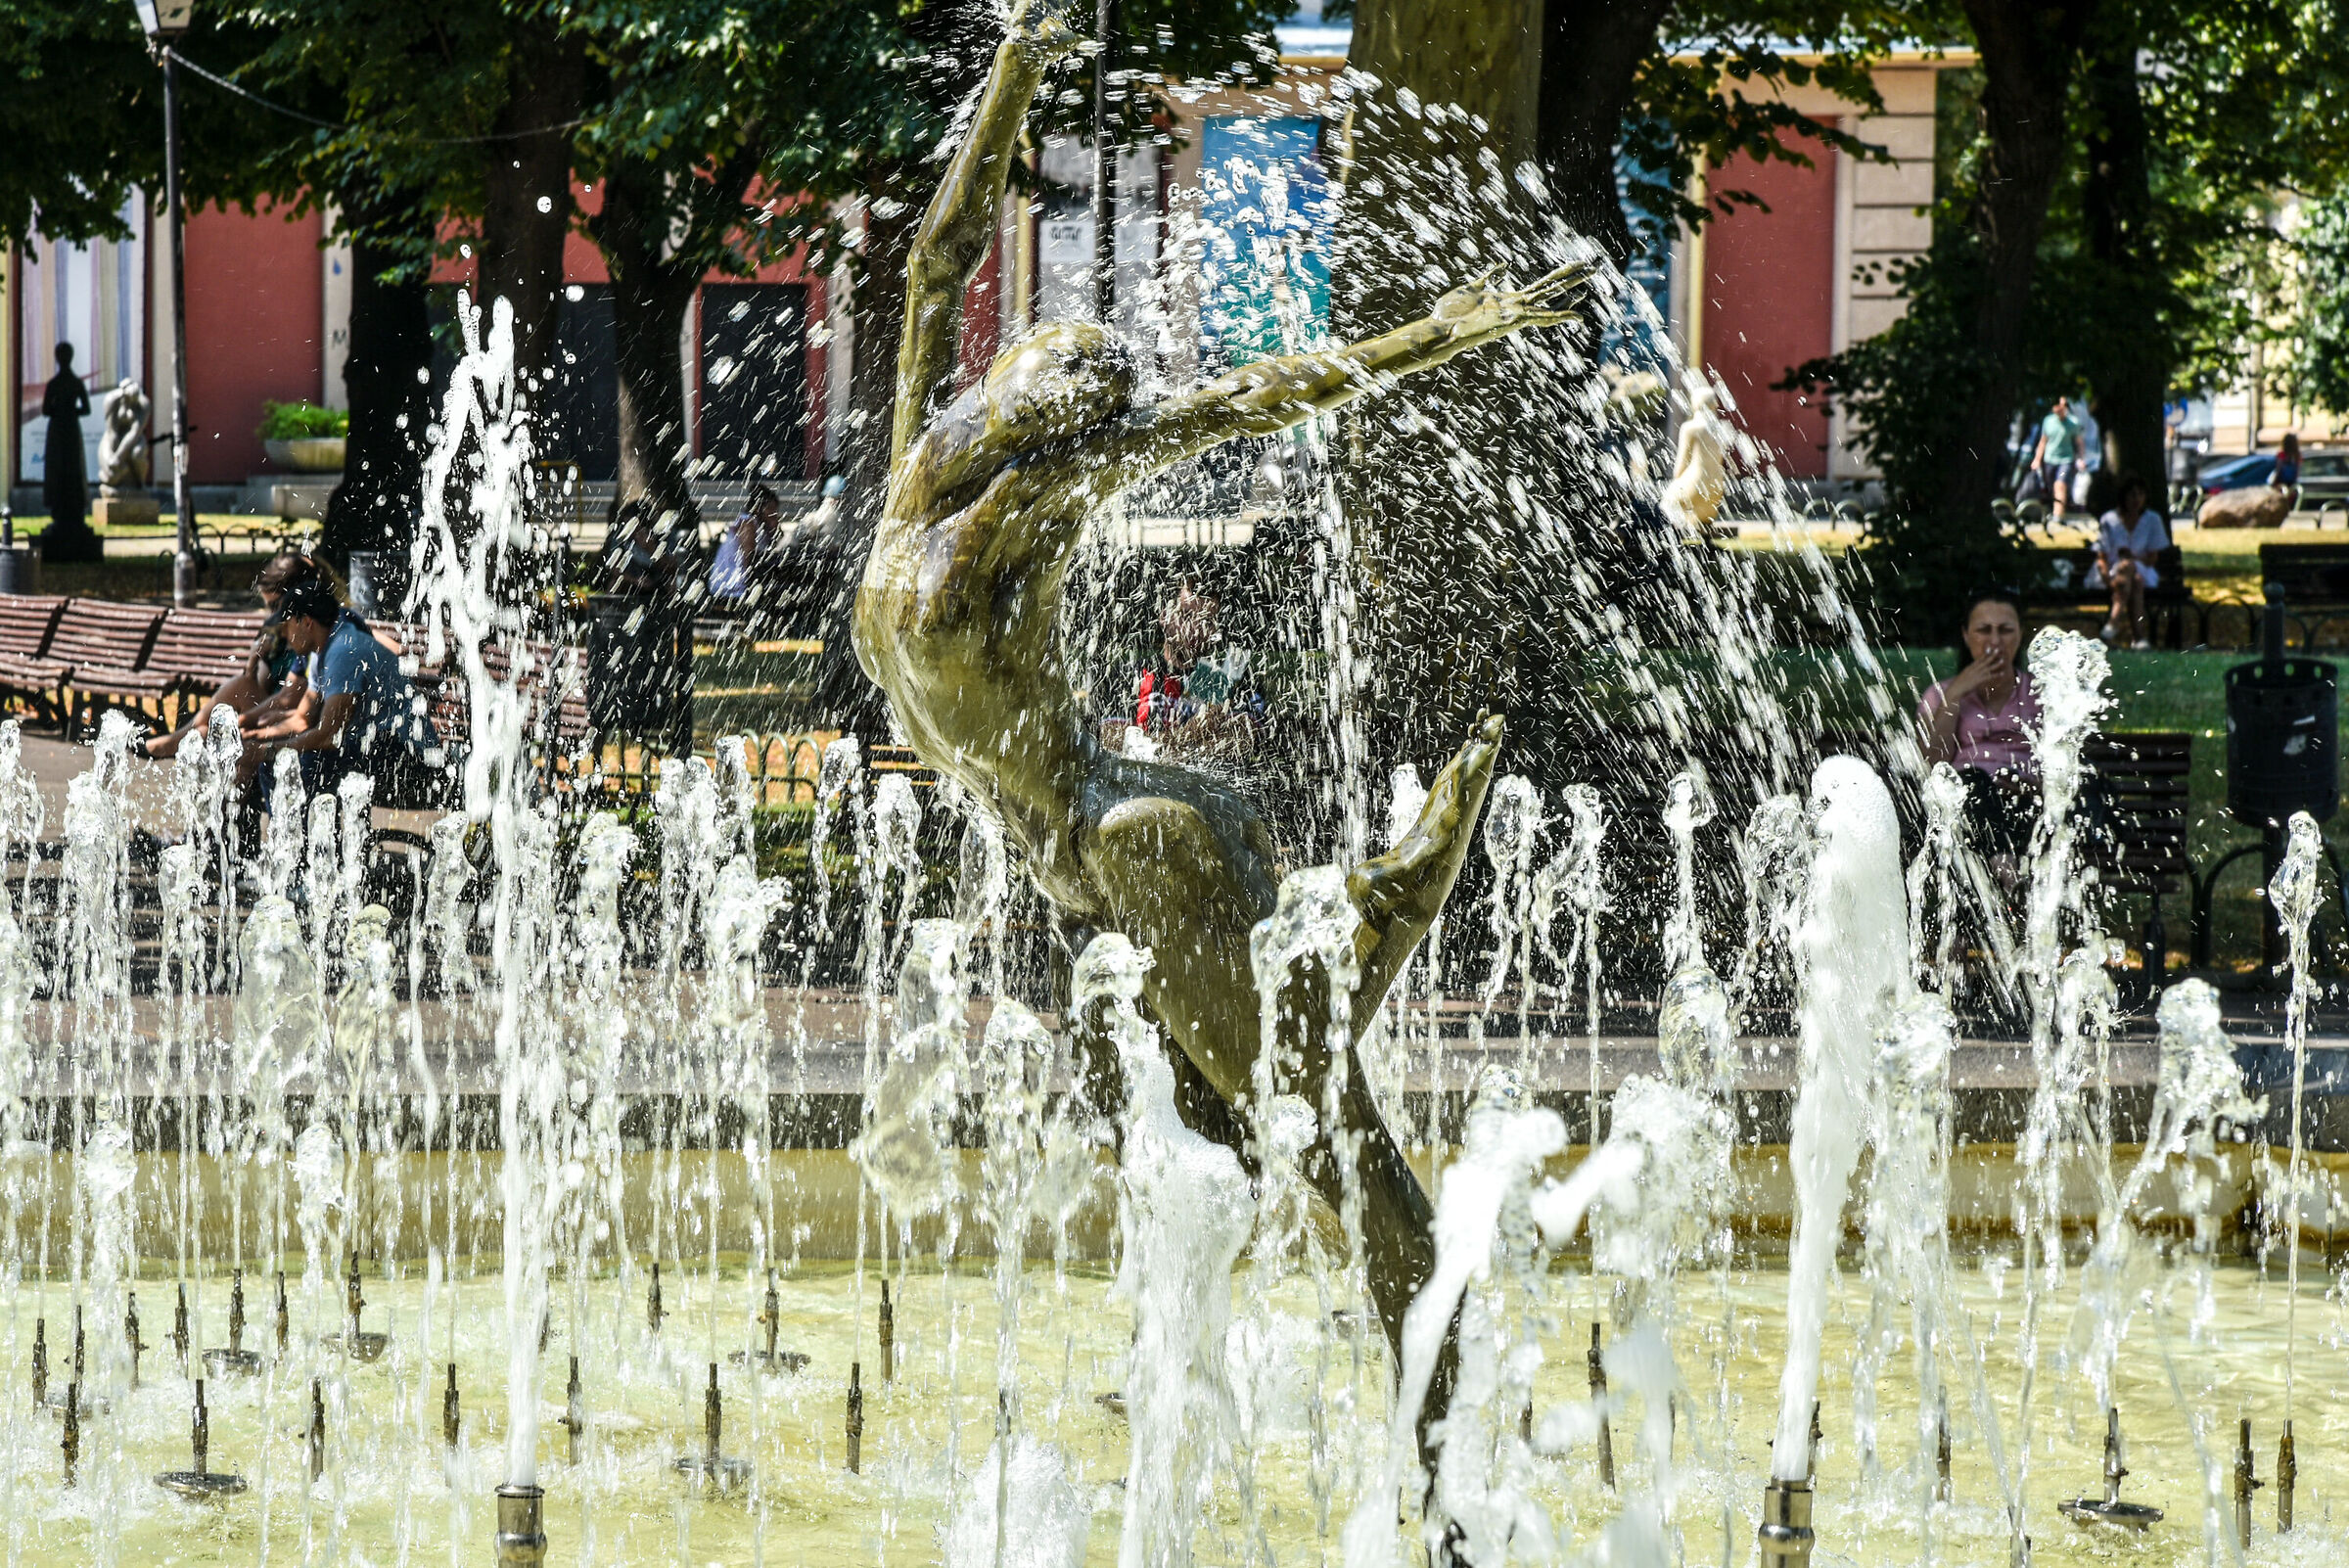 Fountain with female figure - Sofia - Bulgaria...